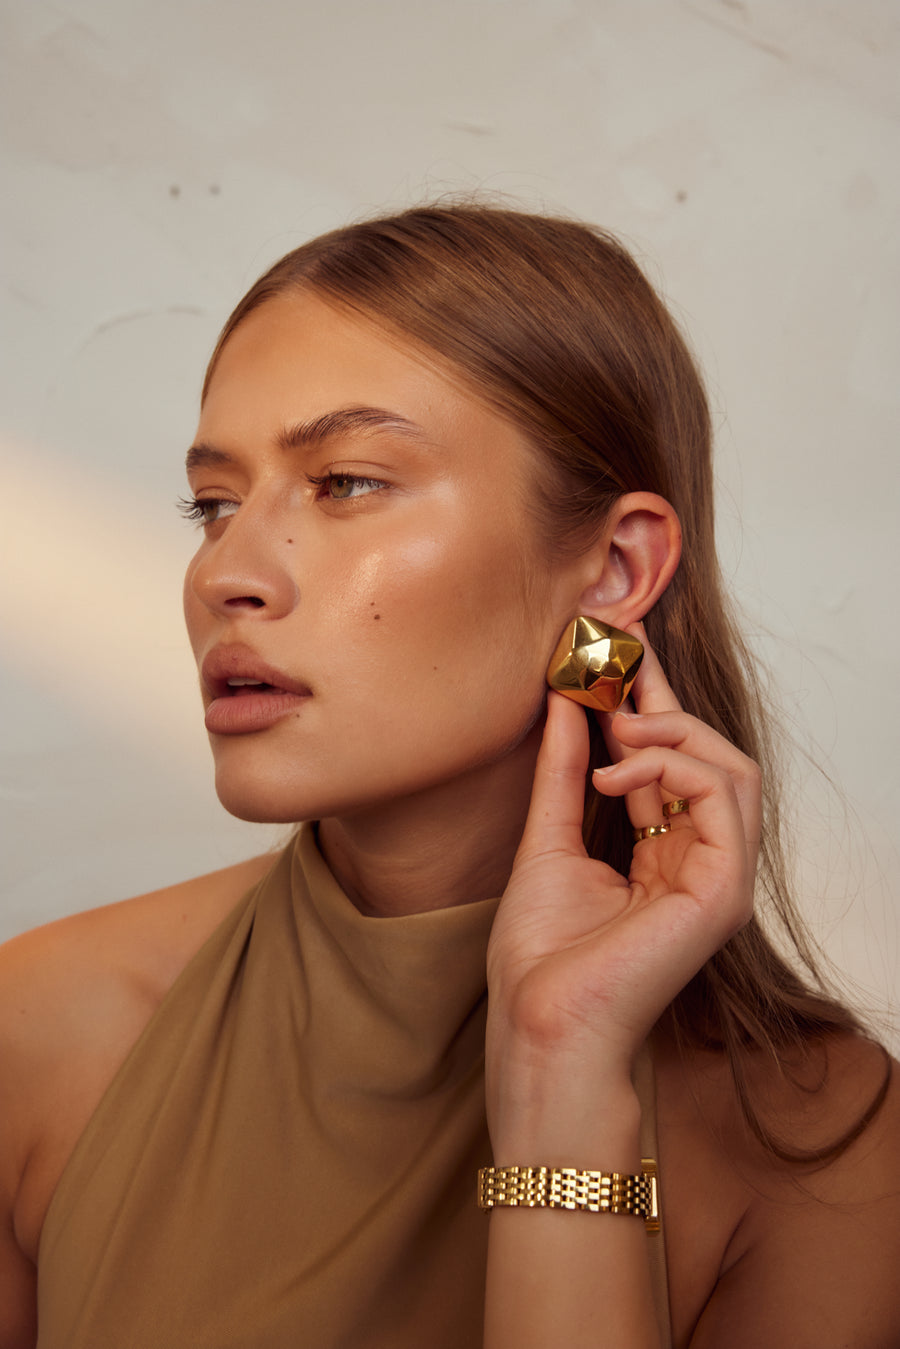 Gigi Earrings | Gold